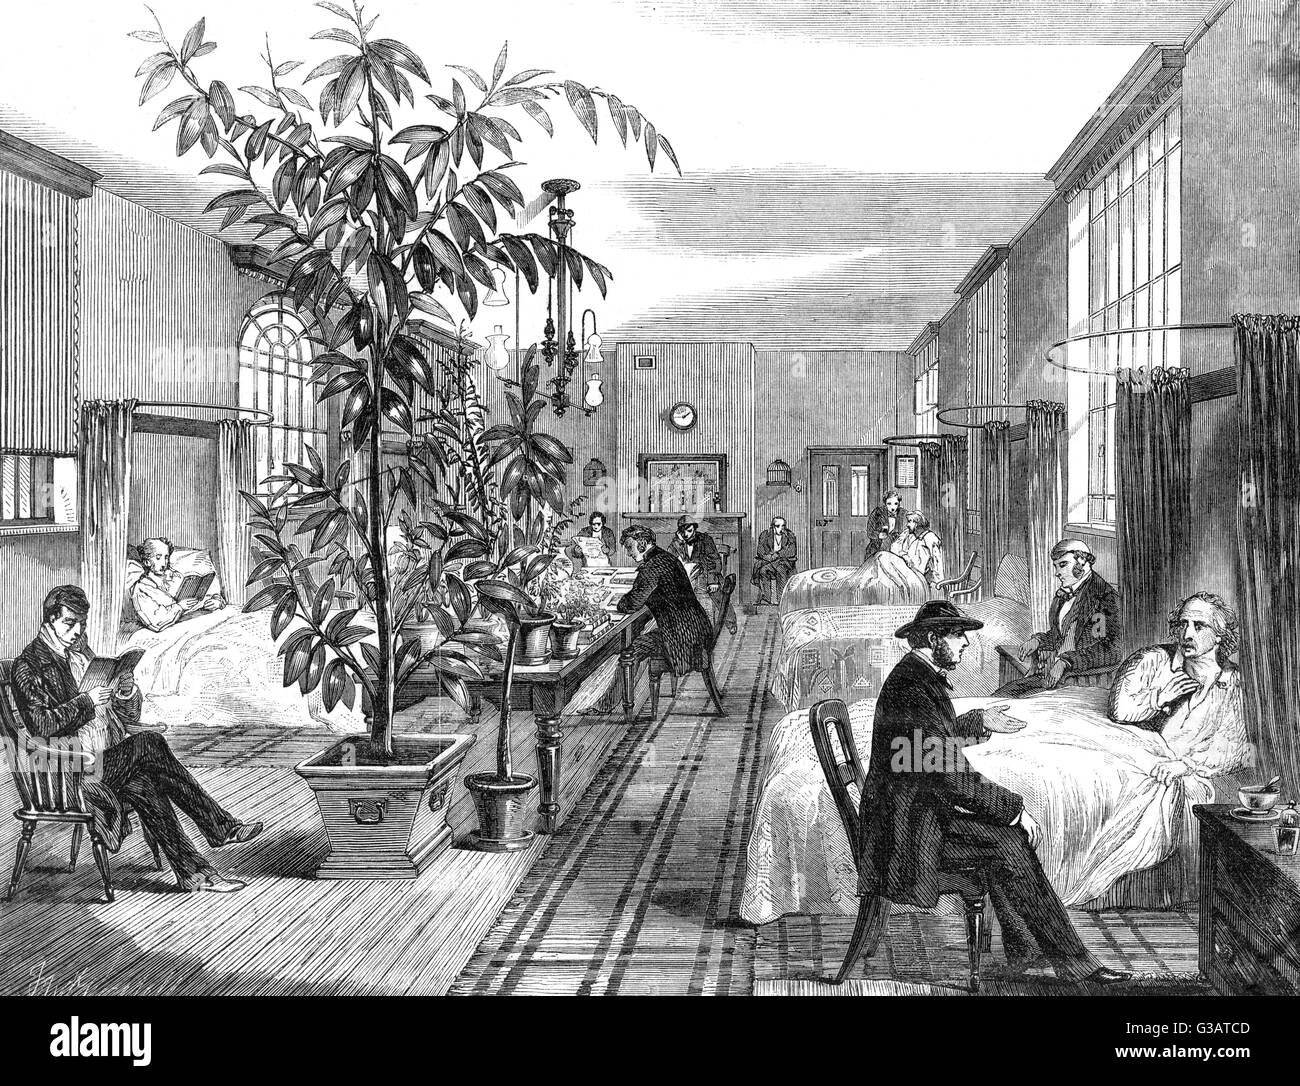 Uomini della degenza in ospedale di Betlemme, 1861. Diversi grandi vasi di piante sono in evidenza; forse uno dei primi esempi di terapia orticola. Data: 1861 Foto Stock